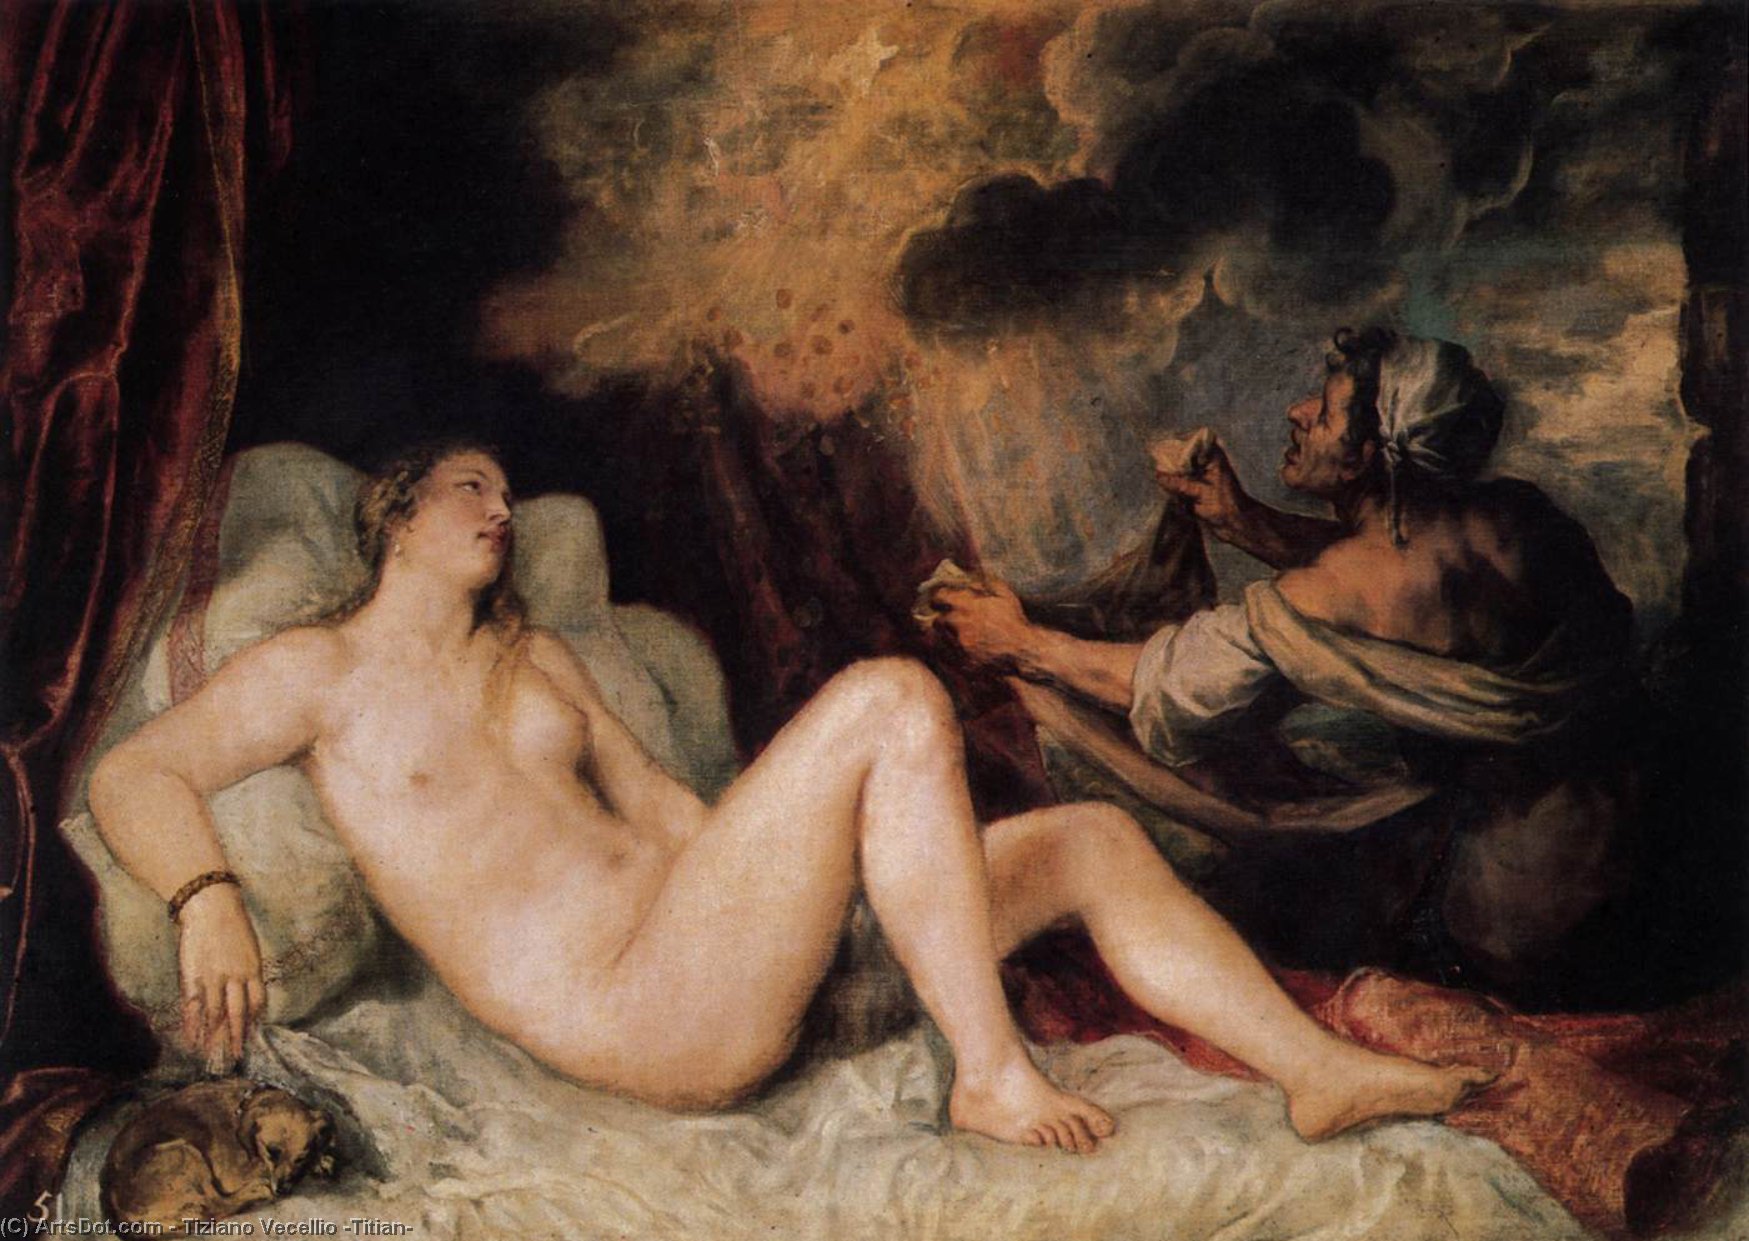 WikiOO.org - Encyclopedia of Fine Arts - Maľba, Artwork Tiziano Vecellio (Titian) - Danaë with a Nurse